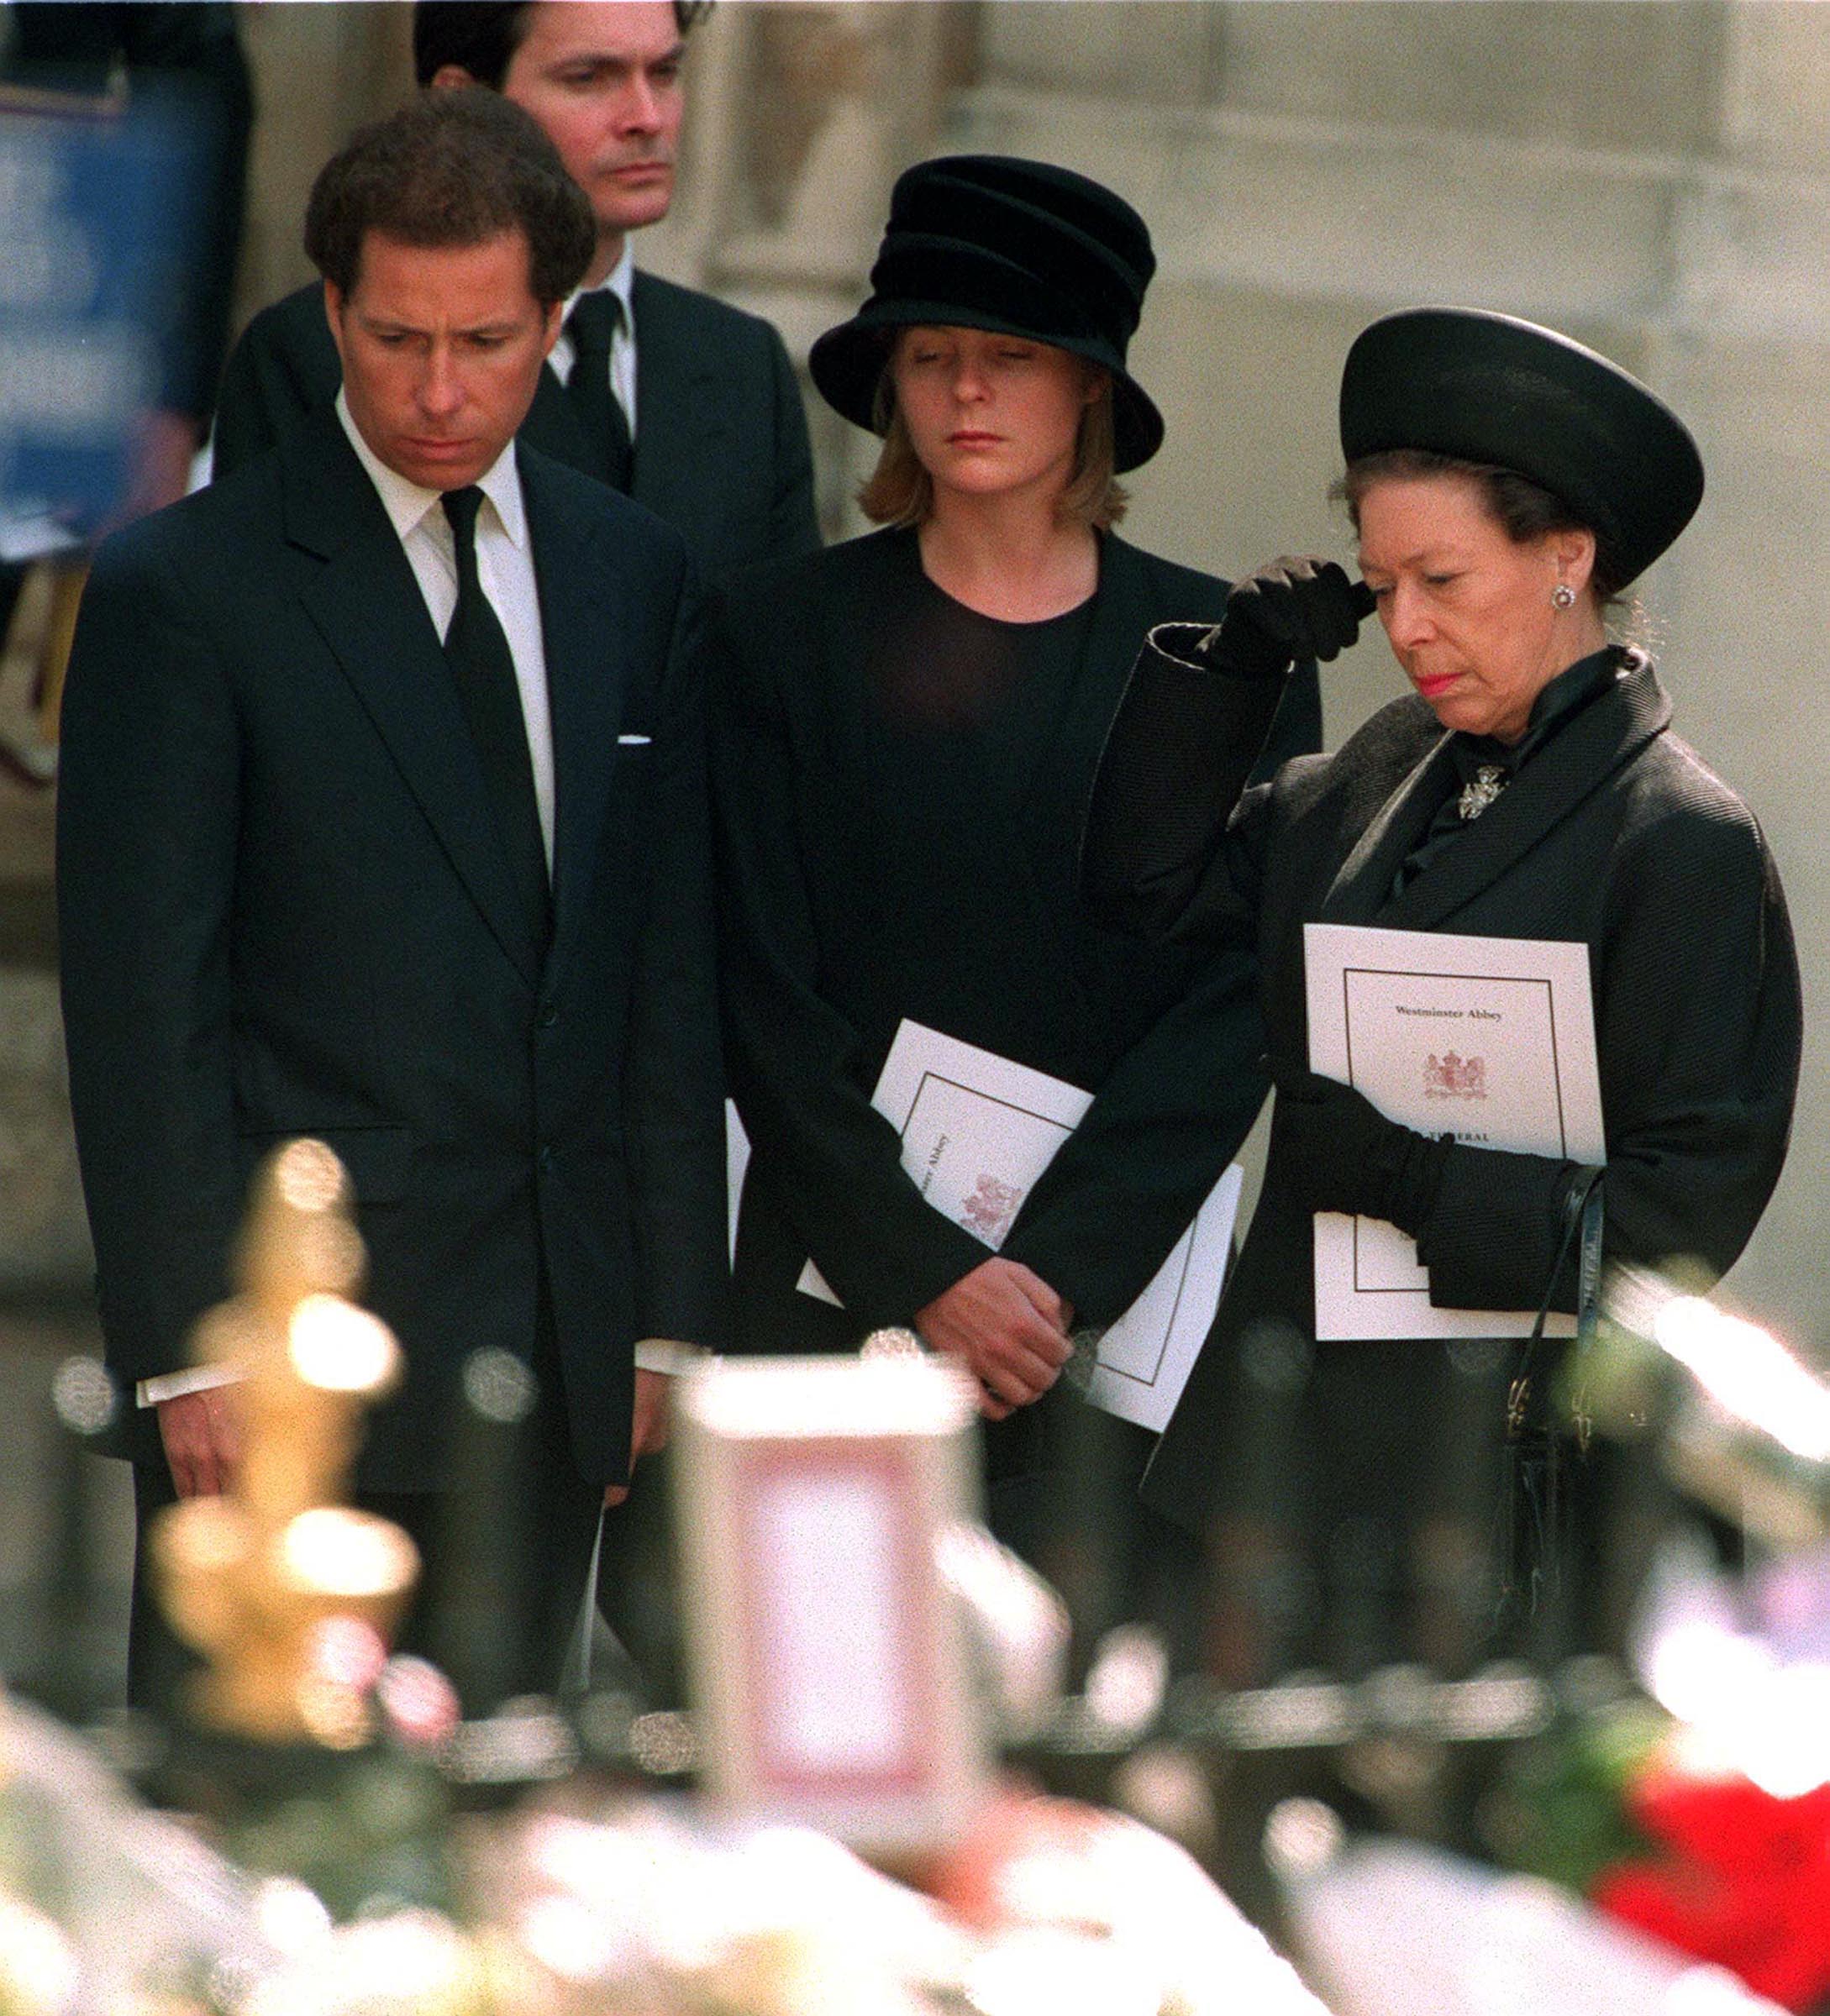 Prinzessin Margaret mit ihrem Sohn Lord Linley und seiner Frau Lady Serena Linley verlassen Westminster Abbey nach der Trauerfeier für Diana, Prinzessin von Wales, 6. September 1997 | Quelle: Getty Images